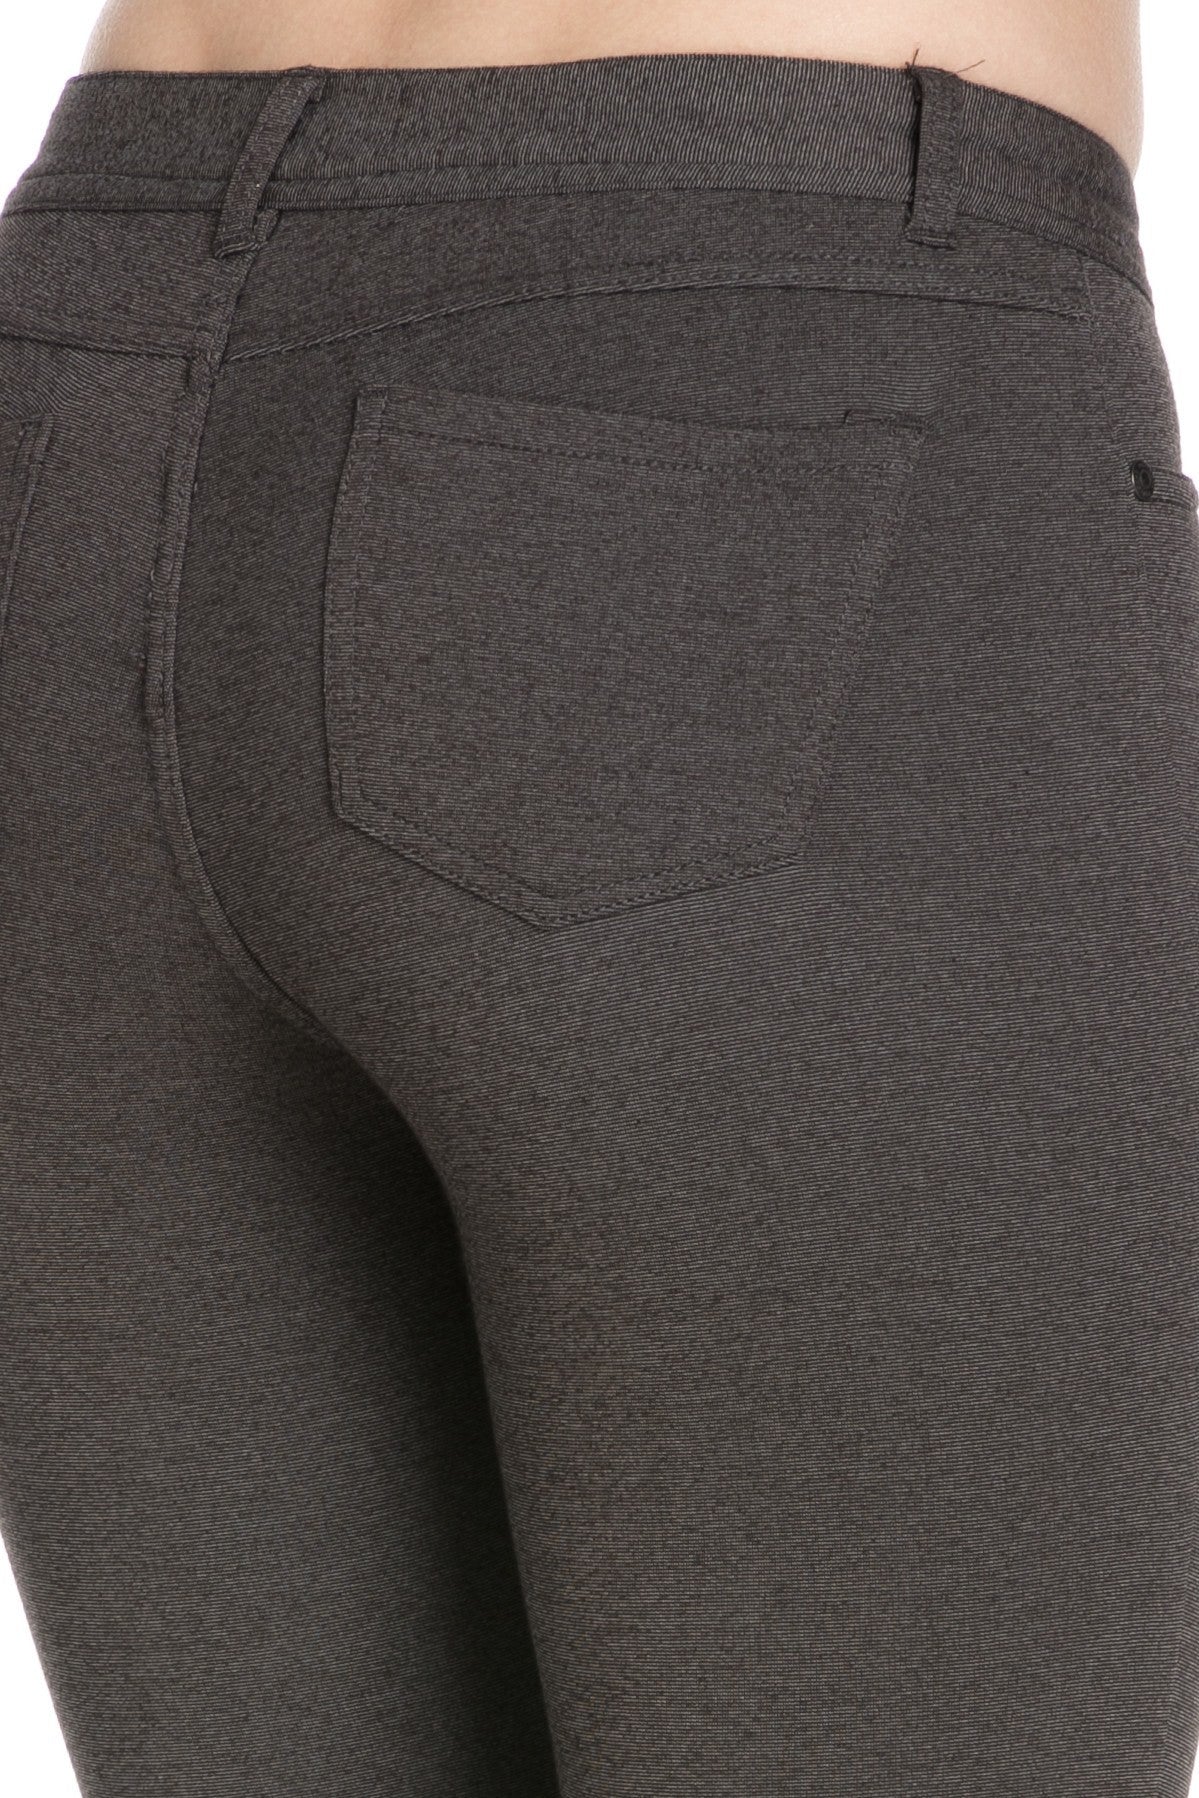 4 Way Stretchy Ponte Knit Capri Skinny Jeans (Charcoal) - Poplooks